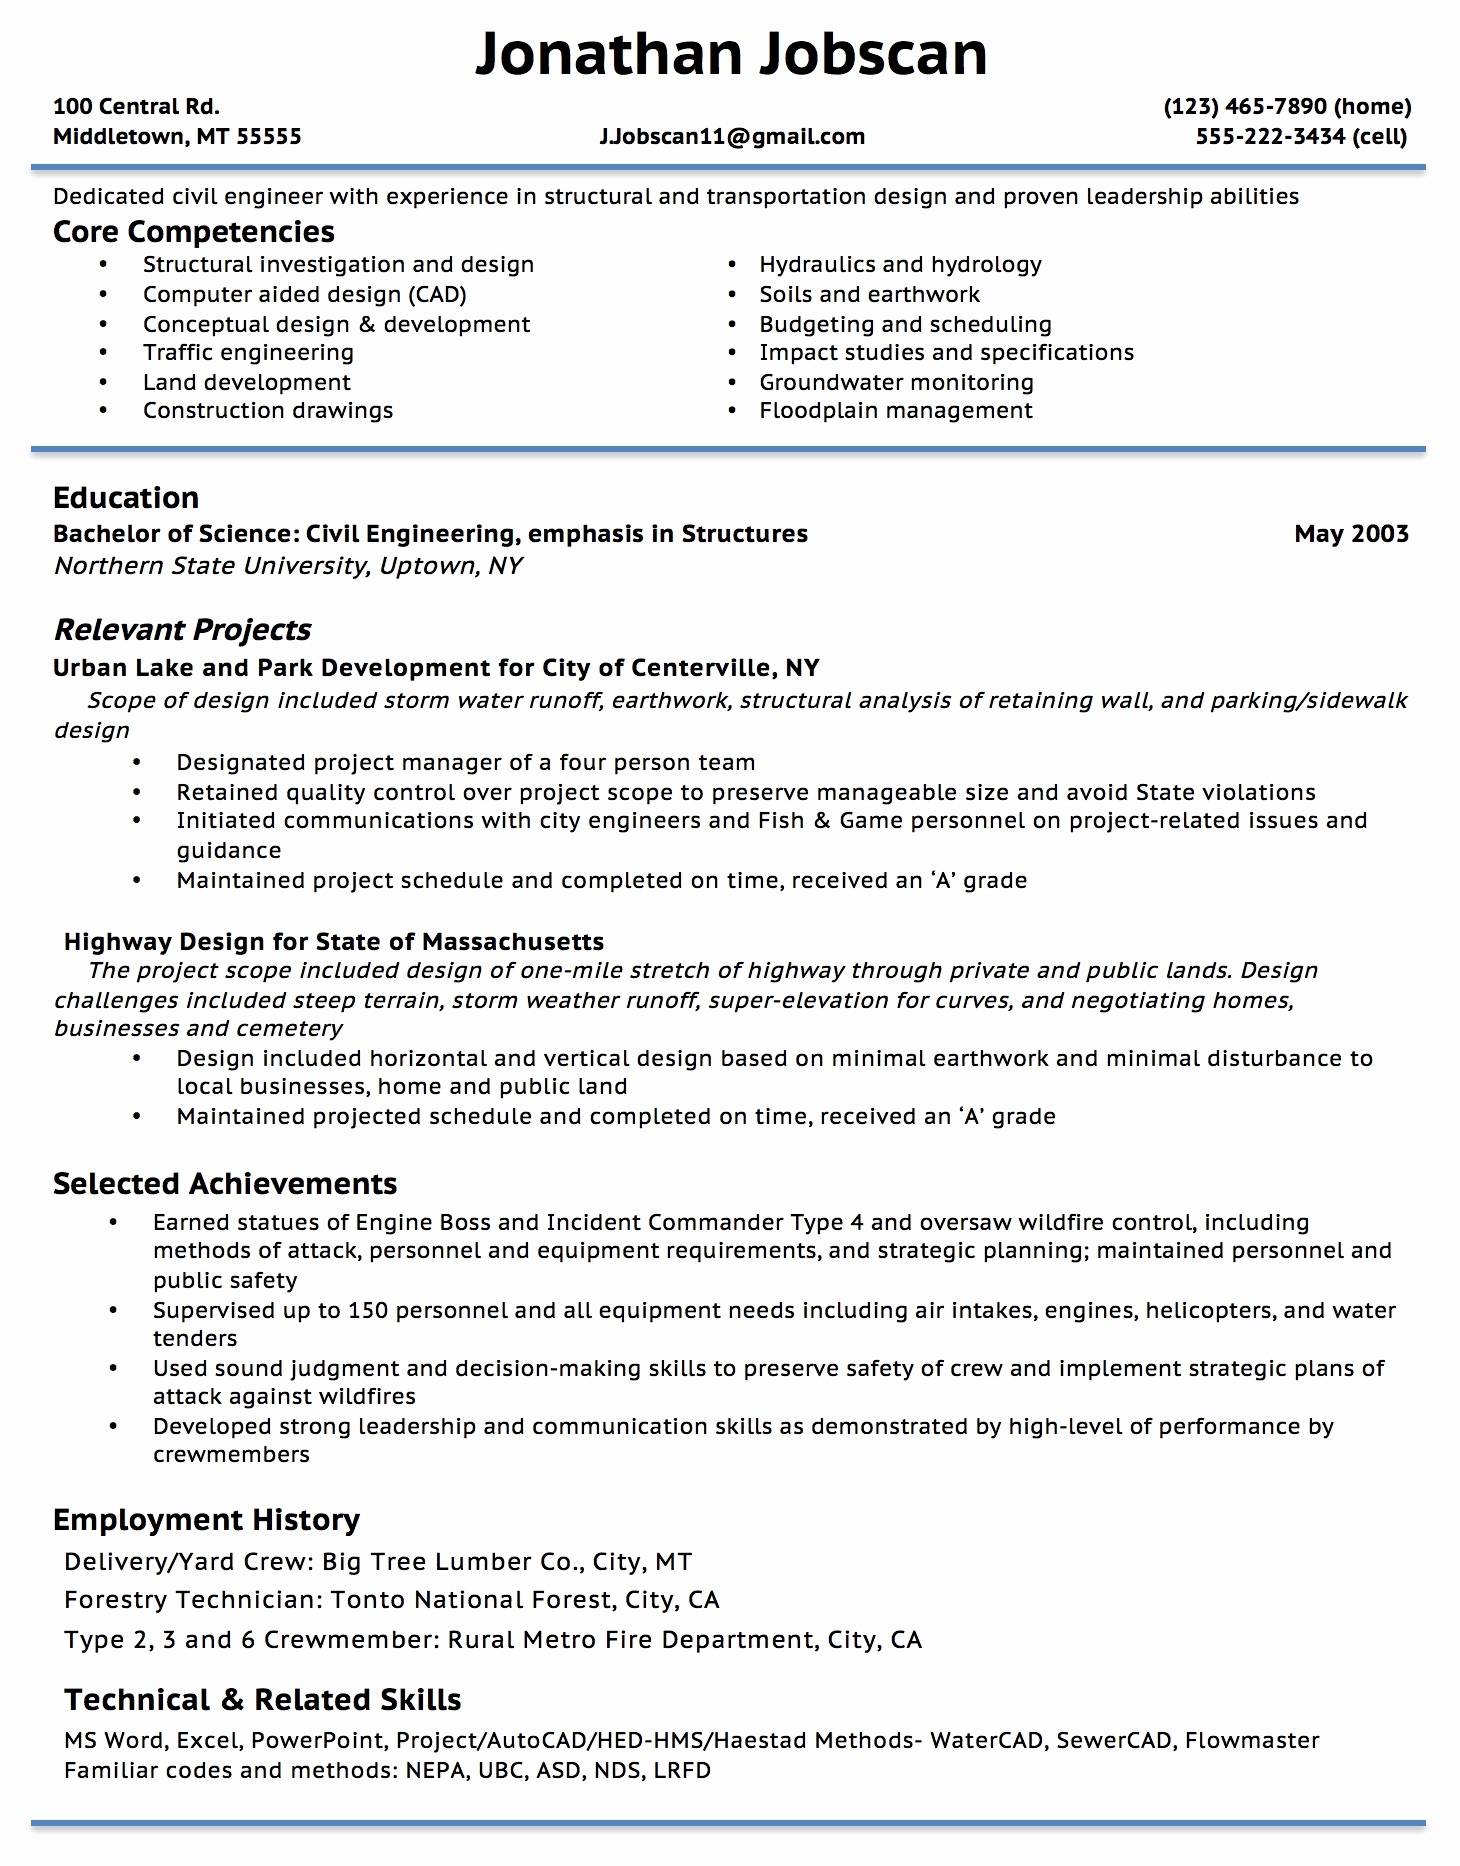 cv-template-overleaf-resume-format